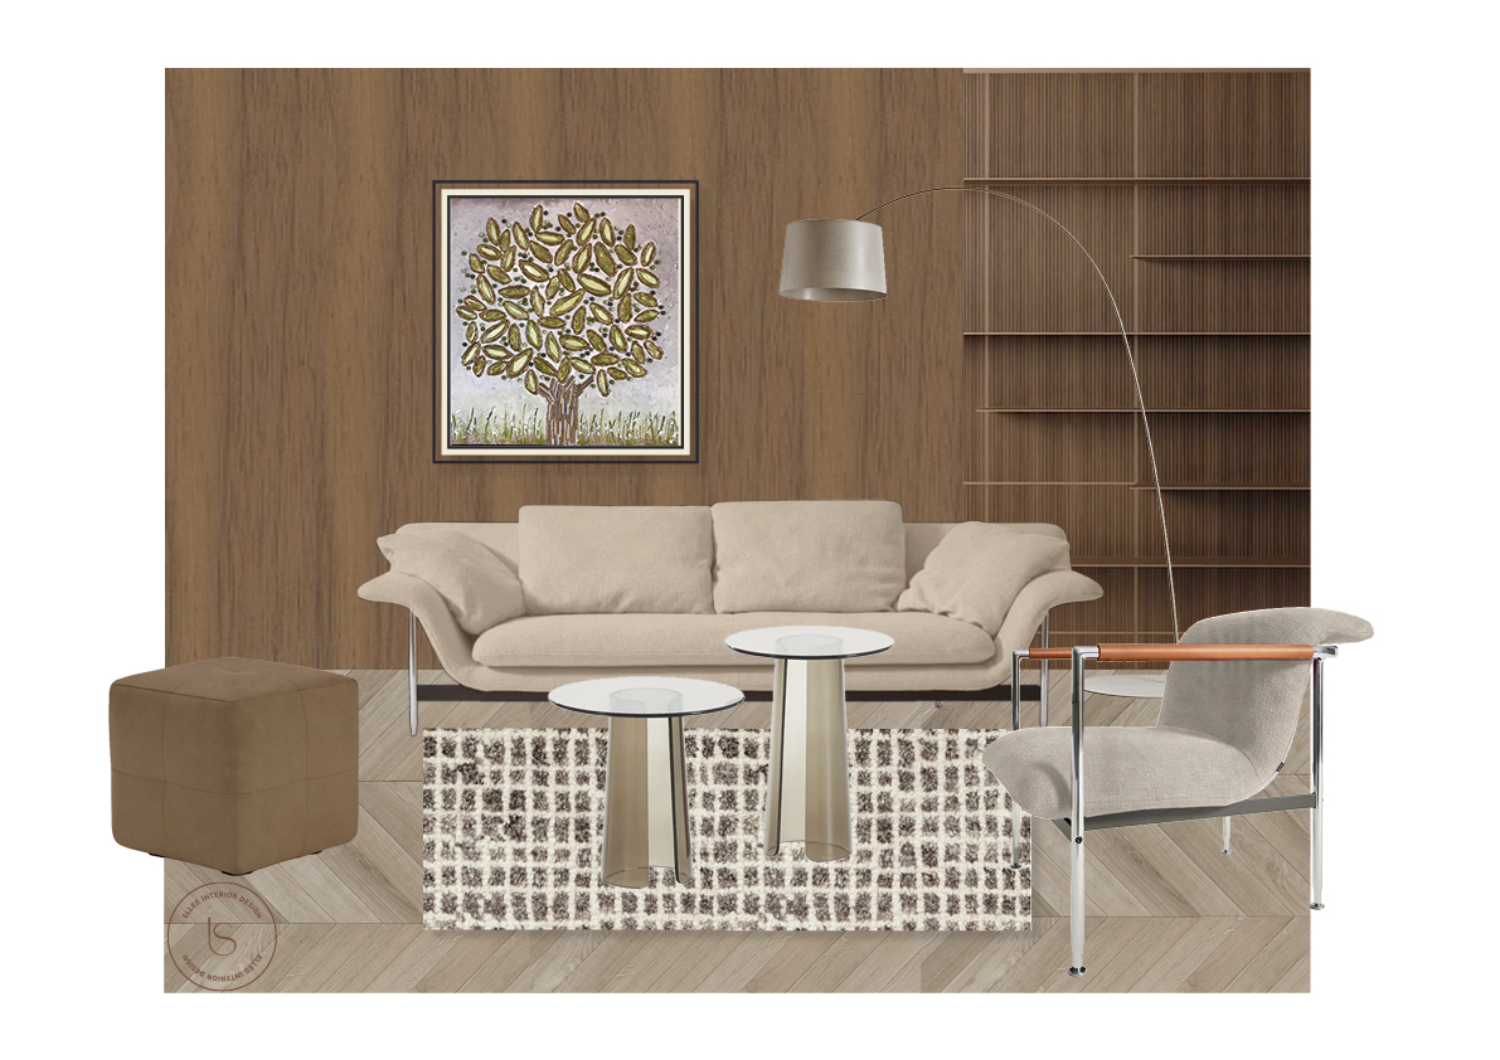 Composizione artistica mood soggiorno con boiserie libreria, progetto realizzato dallo studio Elles Interior Design.